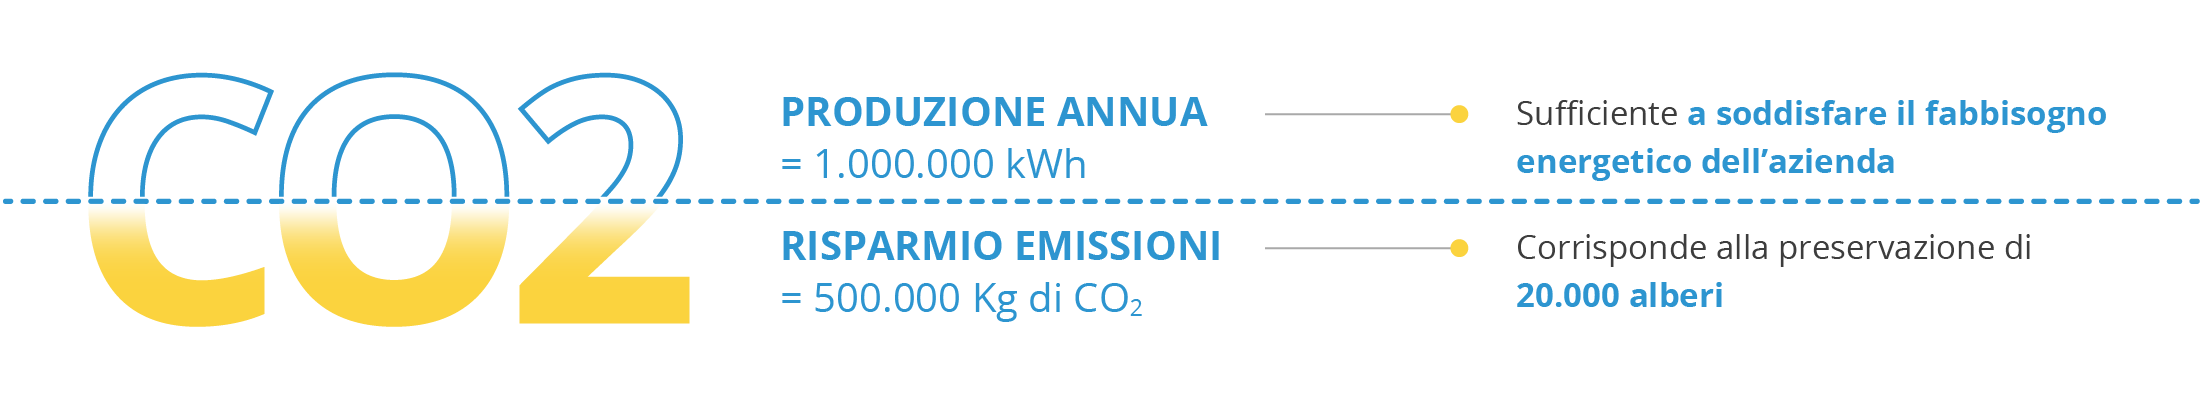 Infografica risparmio emissioni